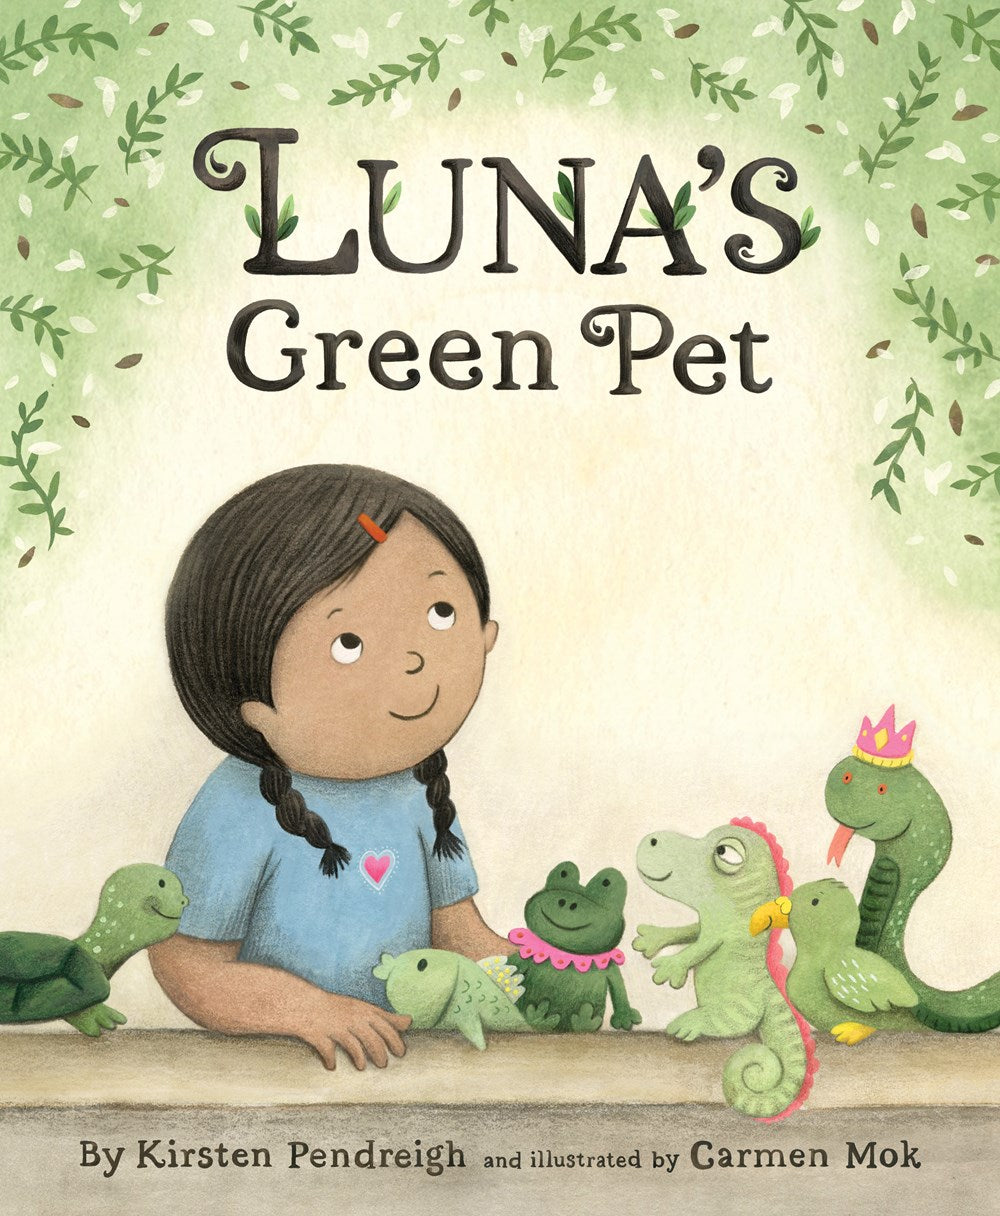 Luna's Green Pet